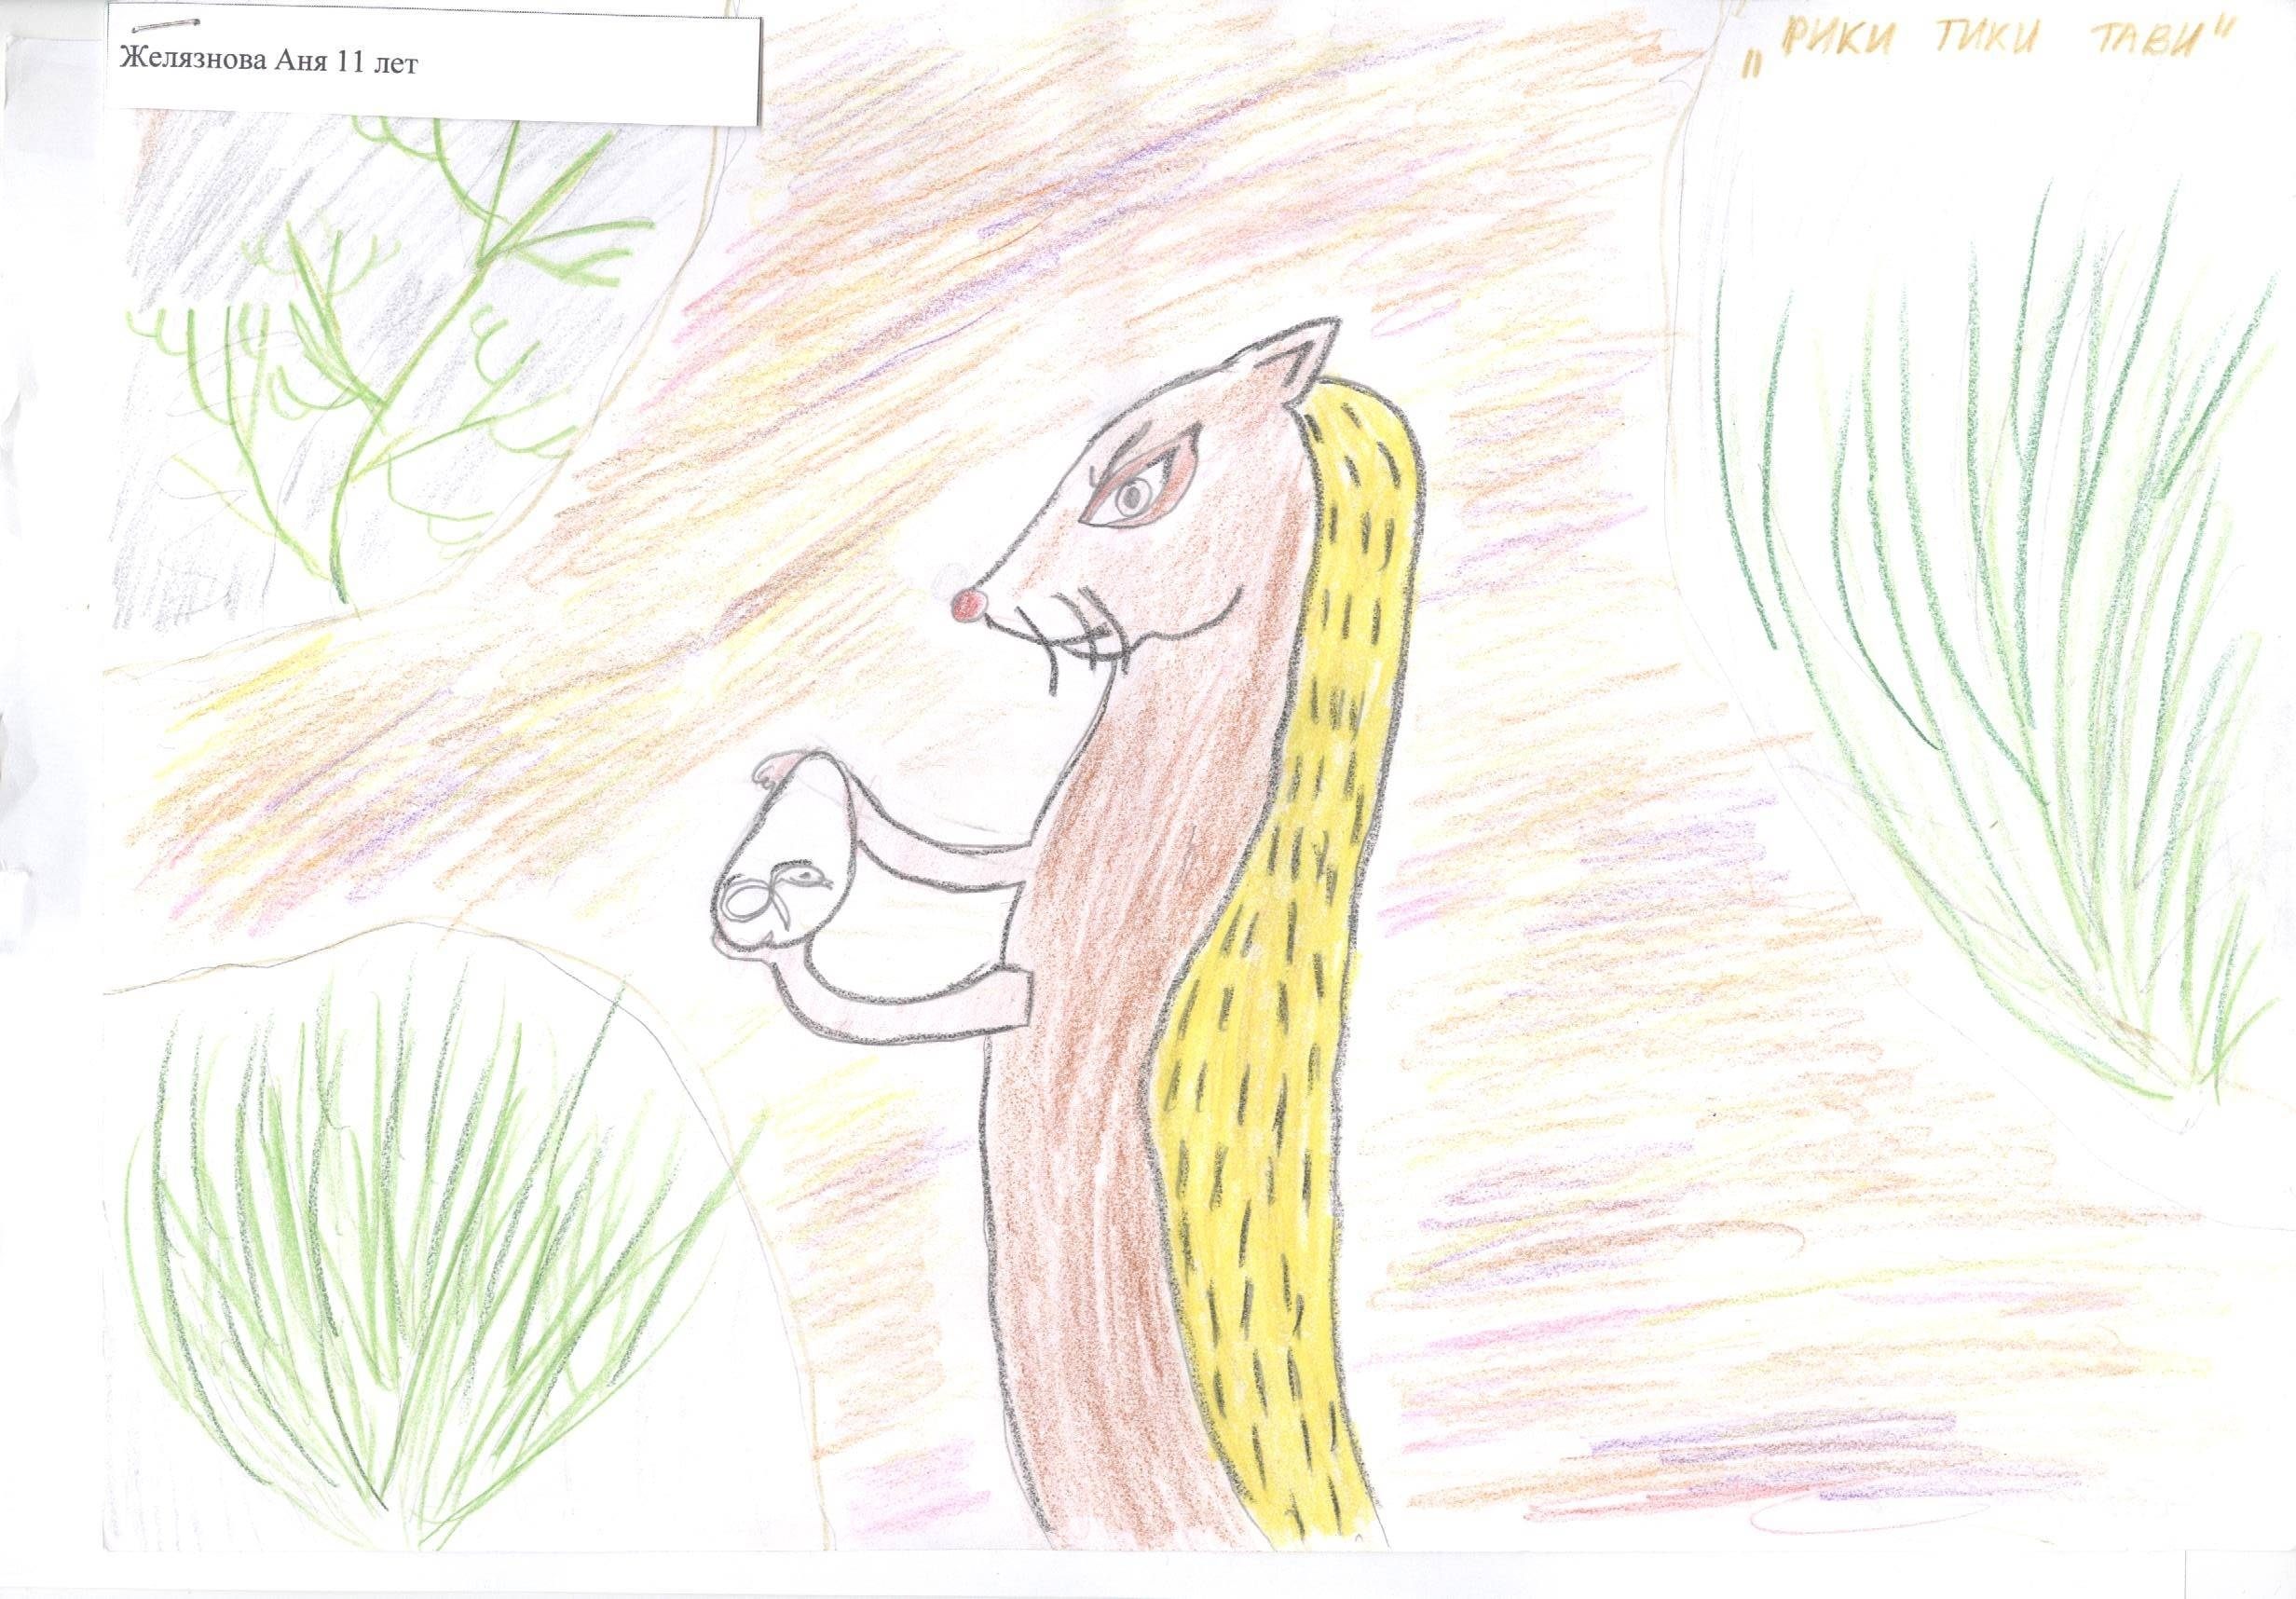 Рики тики тави читательский дневник. Нарисовать иллюстрацию к сказке Рики Тики Тави. Рисование Рики Тики Тави. Иллюстрации детские Рикки Тикки Тави к сказке. Нарисовать Рики Тики Тави.